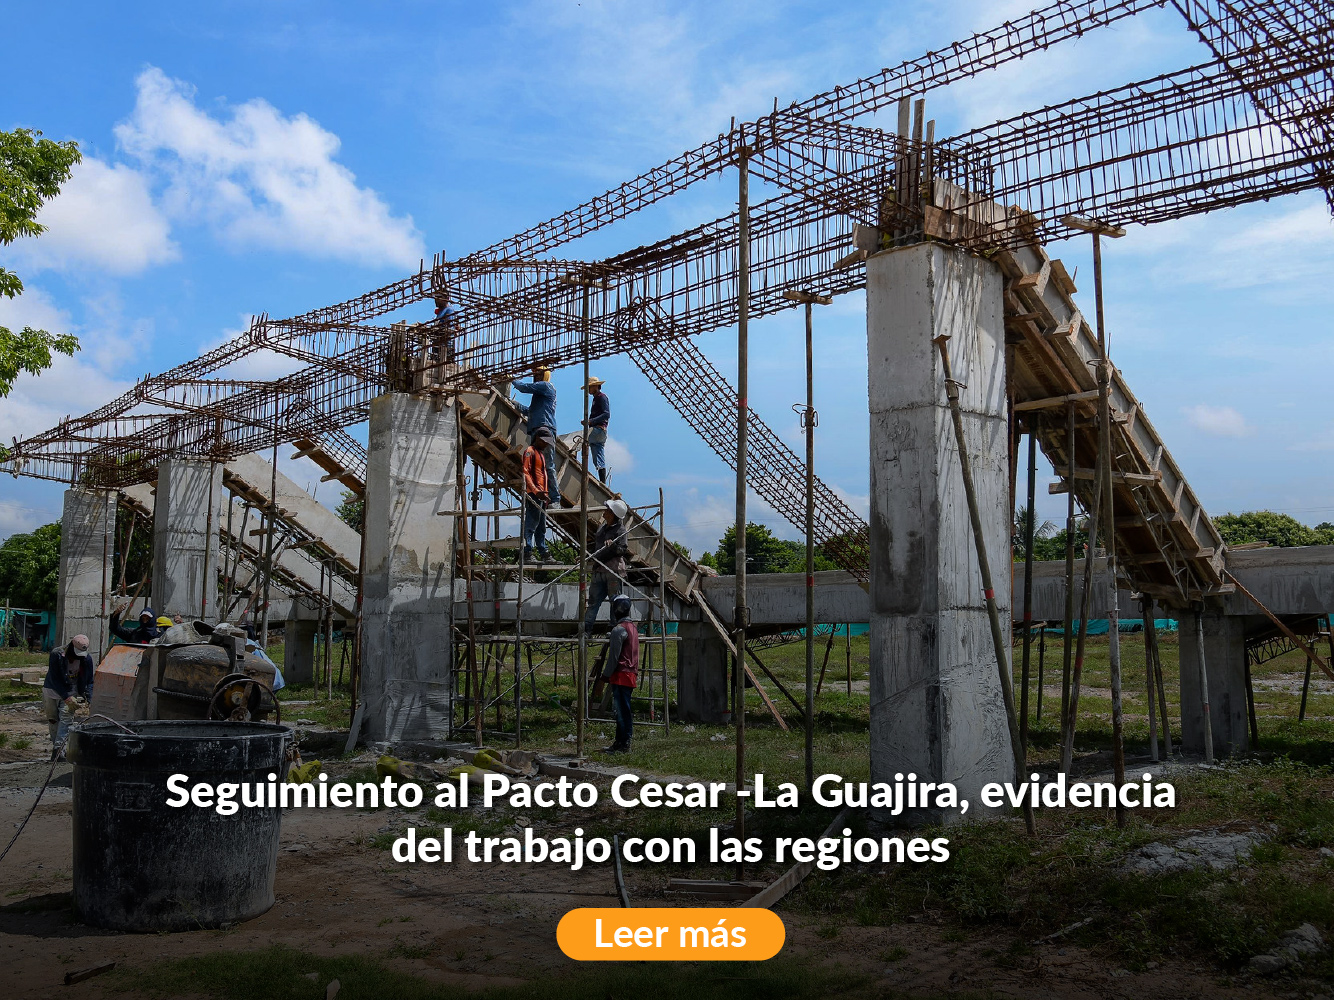 Seguimiento al Pacto Cesar -La Guajira, evidencia del trabajo con las regiones